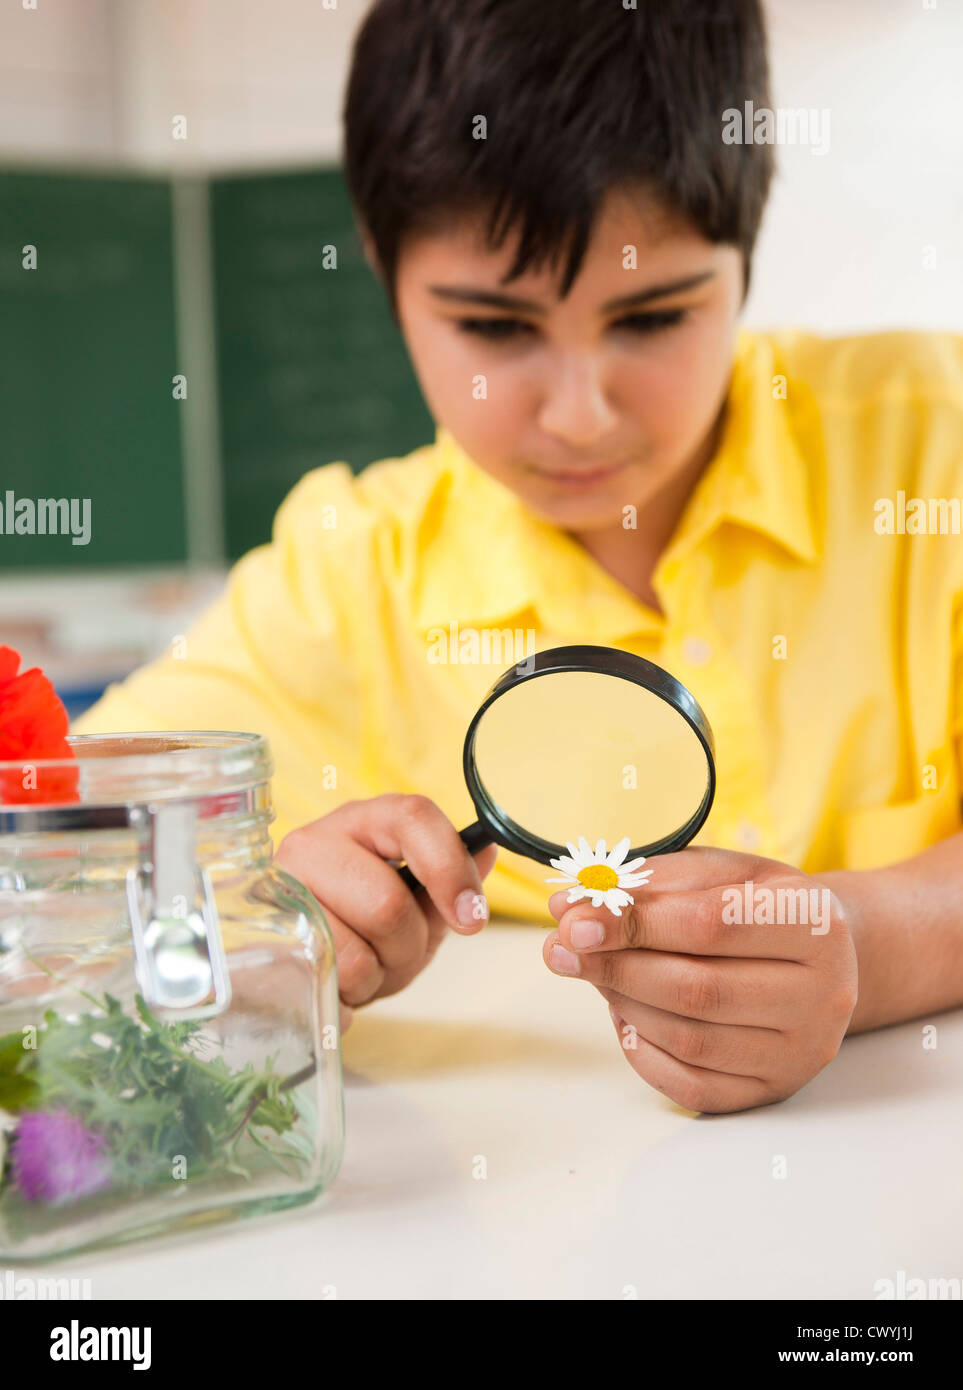 Schoolboy examining daisy in classroom Stock Photo